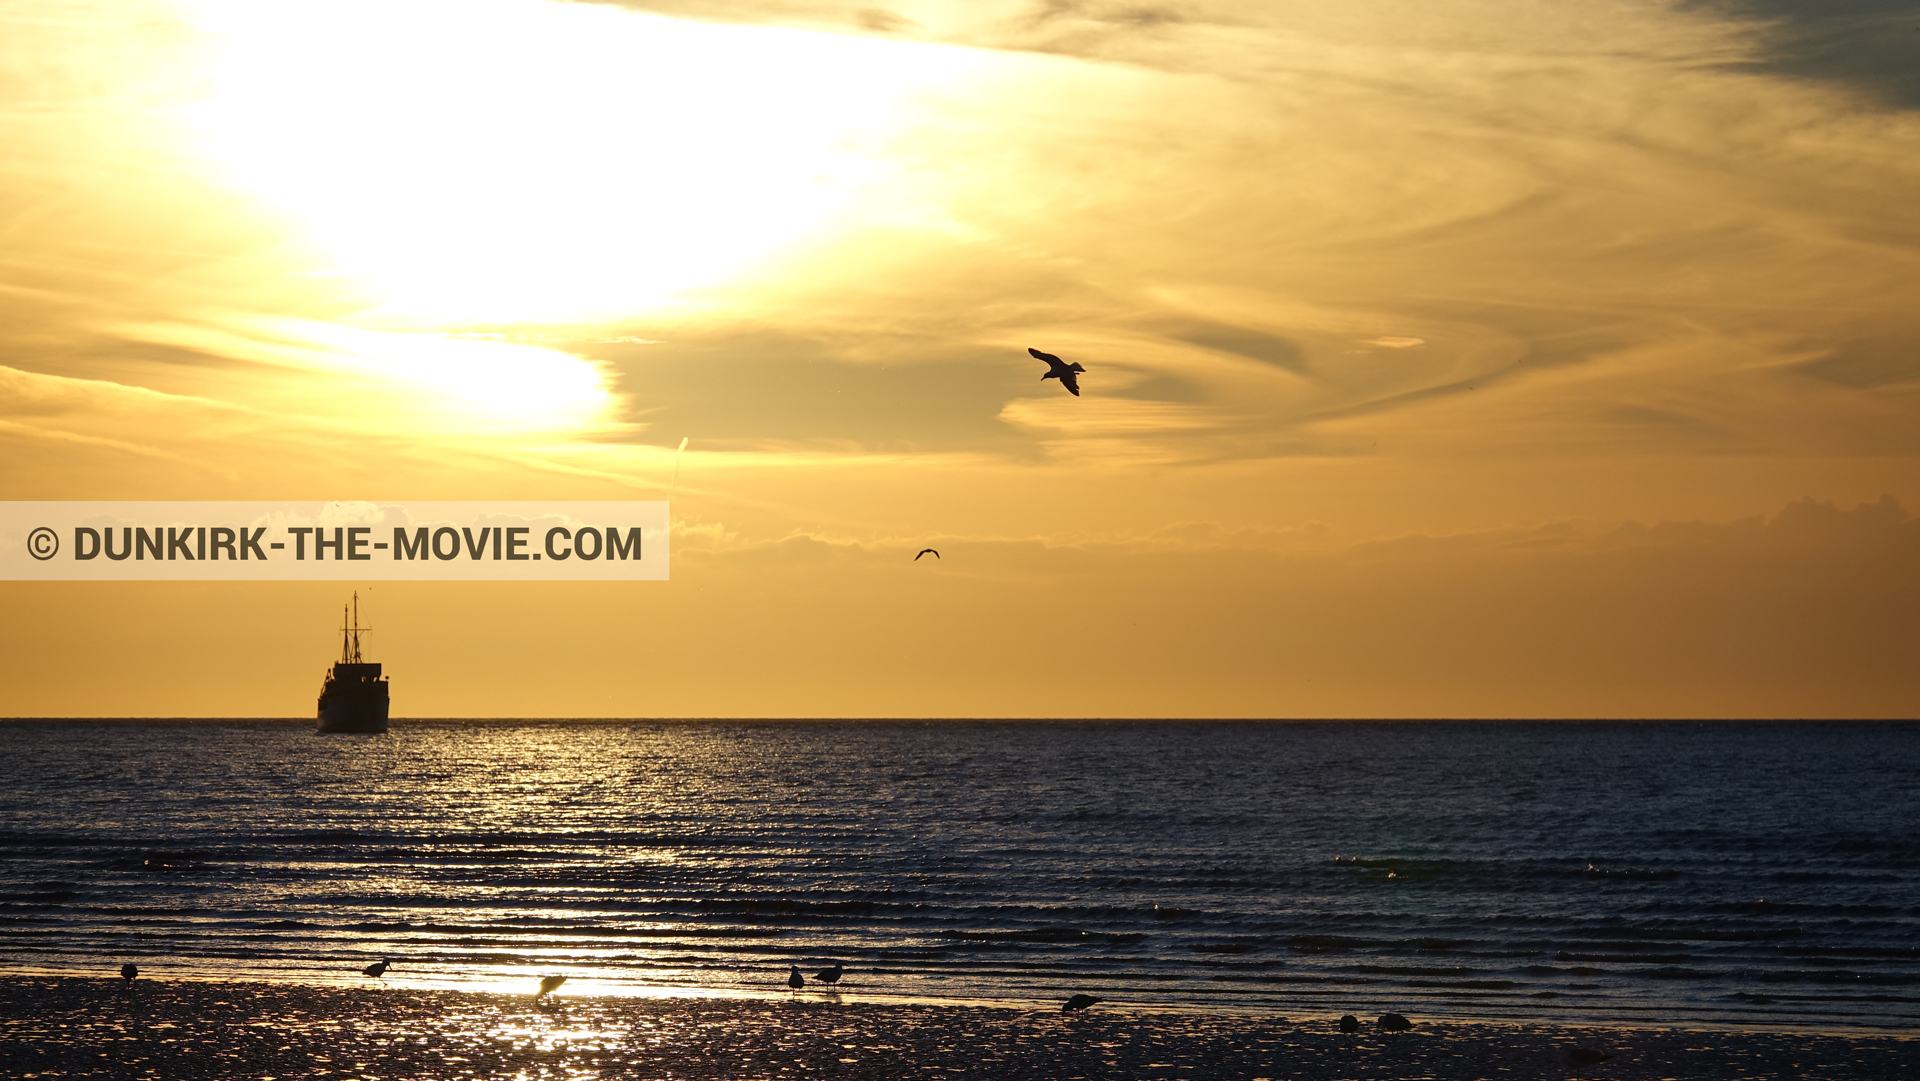 Fotos con barco, cielo anaranjado,  durante el rodaje de la película Dunkerque de Nolan